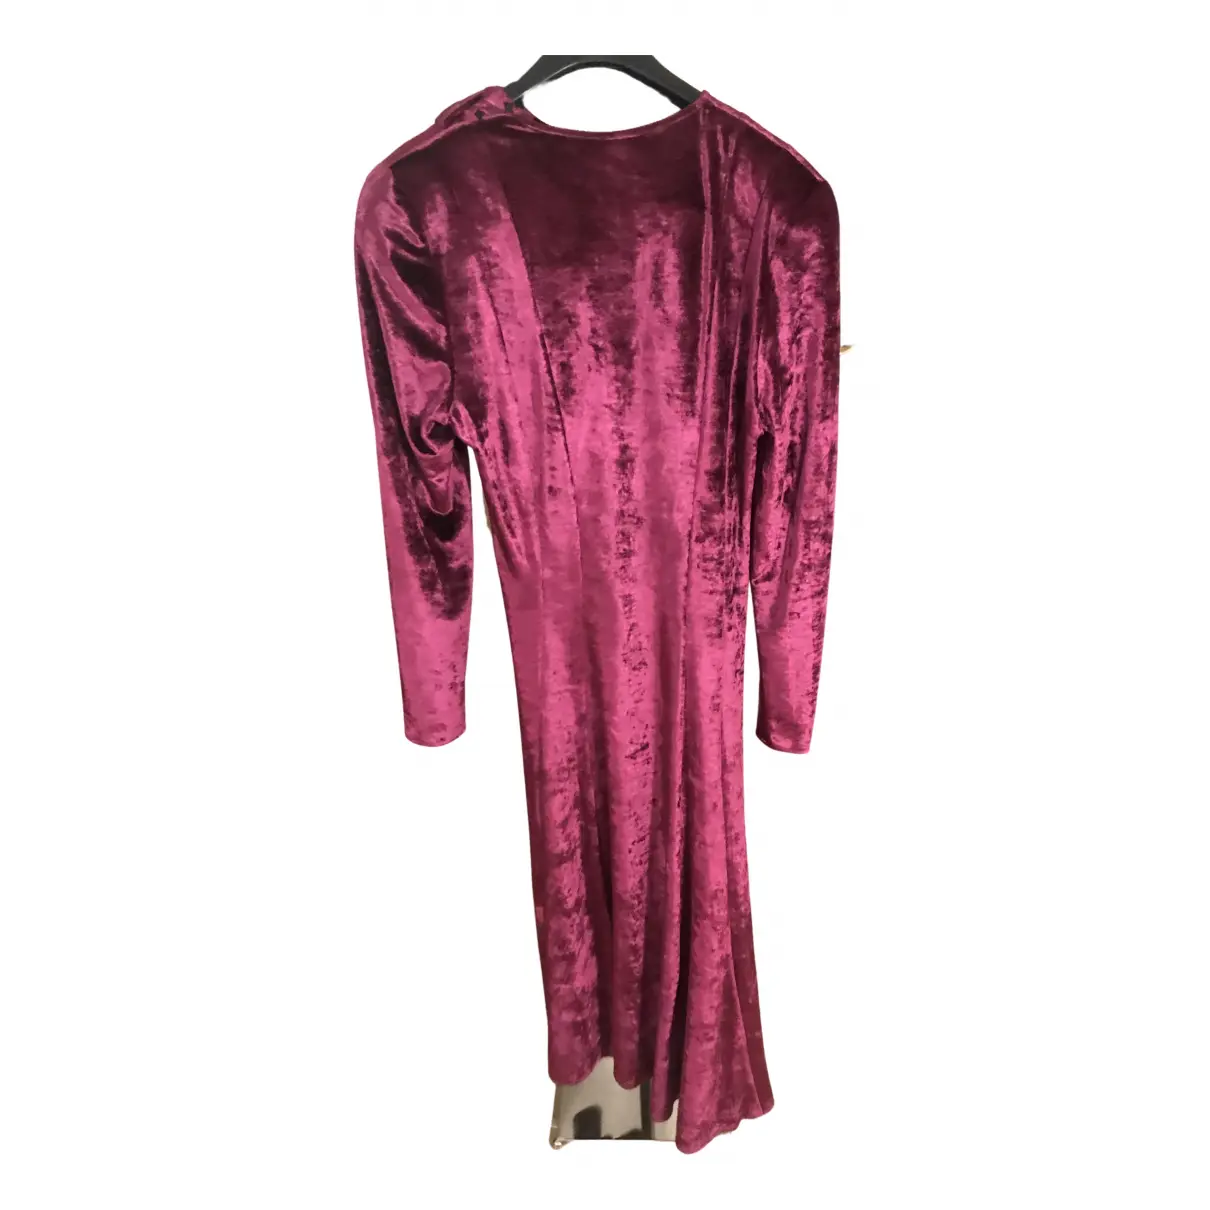 Velvet mid-length dress